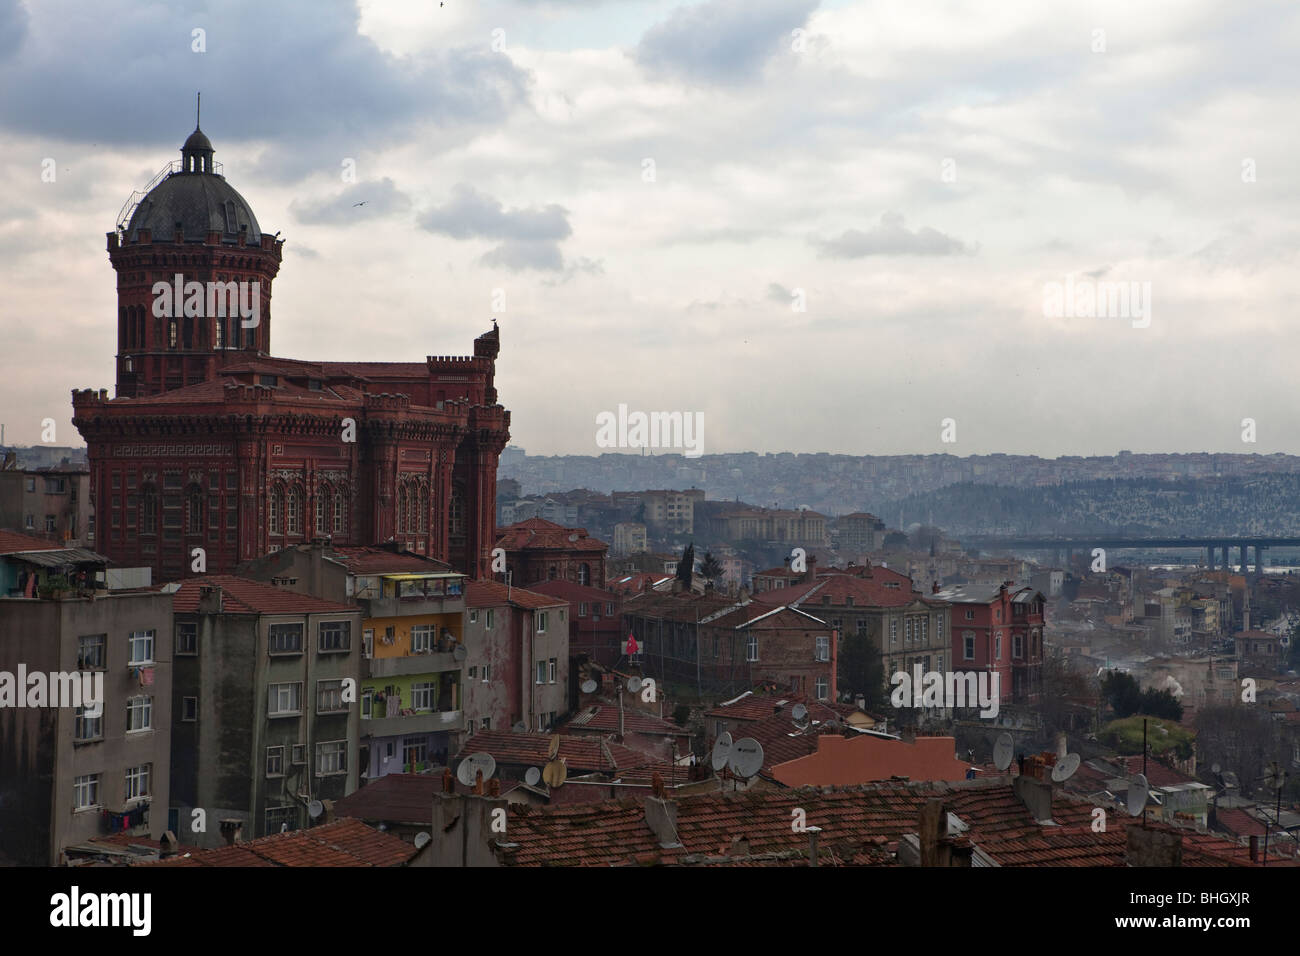 Collegio greco e tetti per le strade di Fener distretto Balat, Istanbul, Europa, Asia, Eurasia, Turchia. Foto Stock